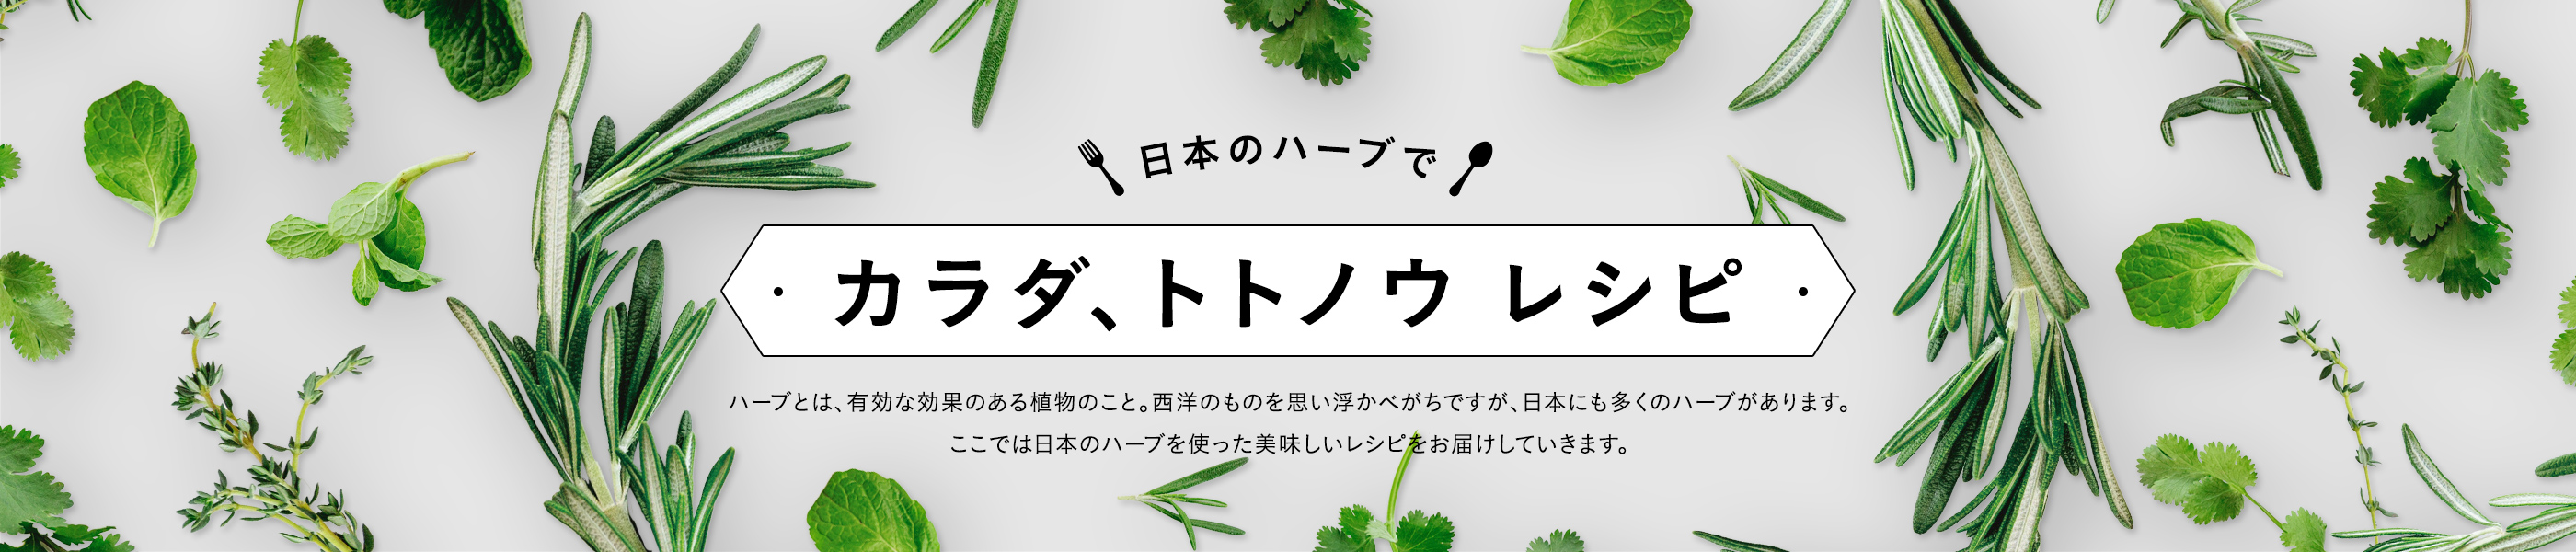 日本のハーブで カラダ、トトノウ レシピ ハーブとは、有効な効果のある植物のこと。西洋のものを思い浮かべがちですが、日本にも多くのハーブがあります。 ここでは日本のハーブを使った美味しいレシピをお届けしていきます。